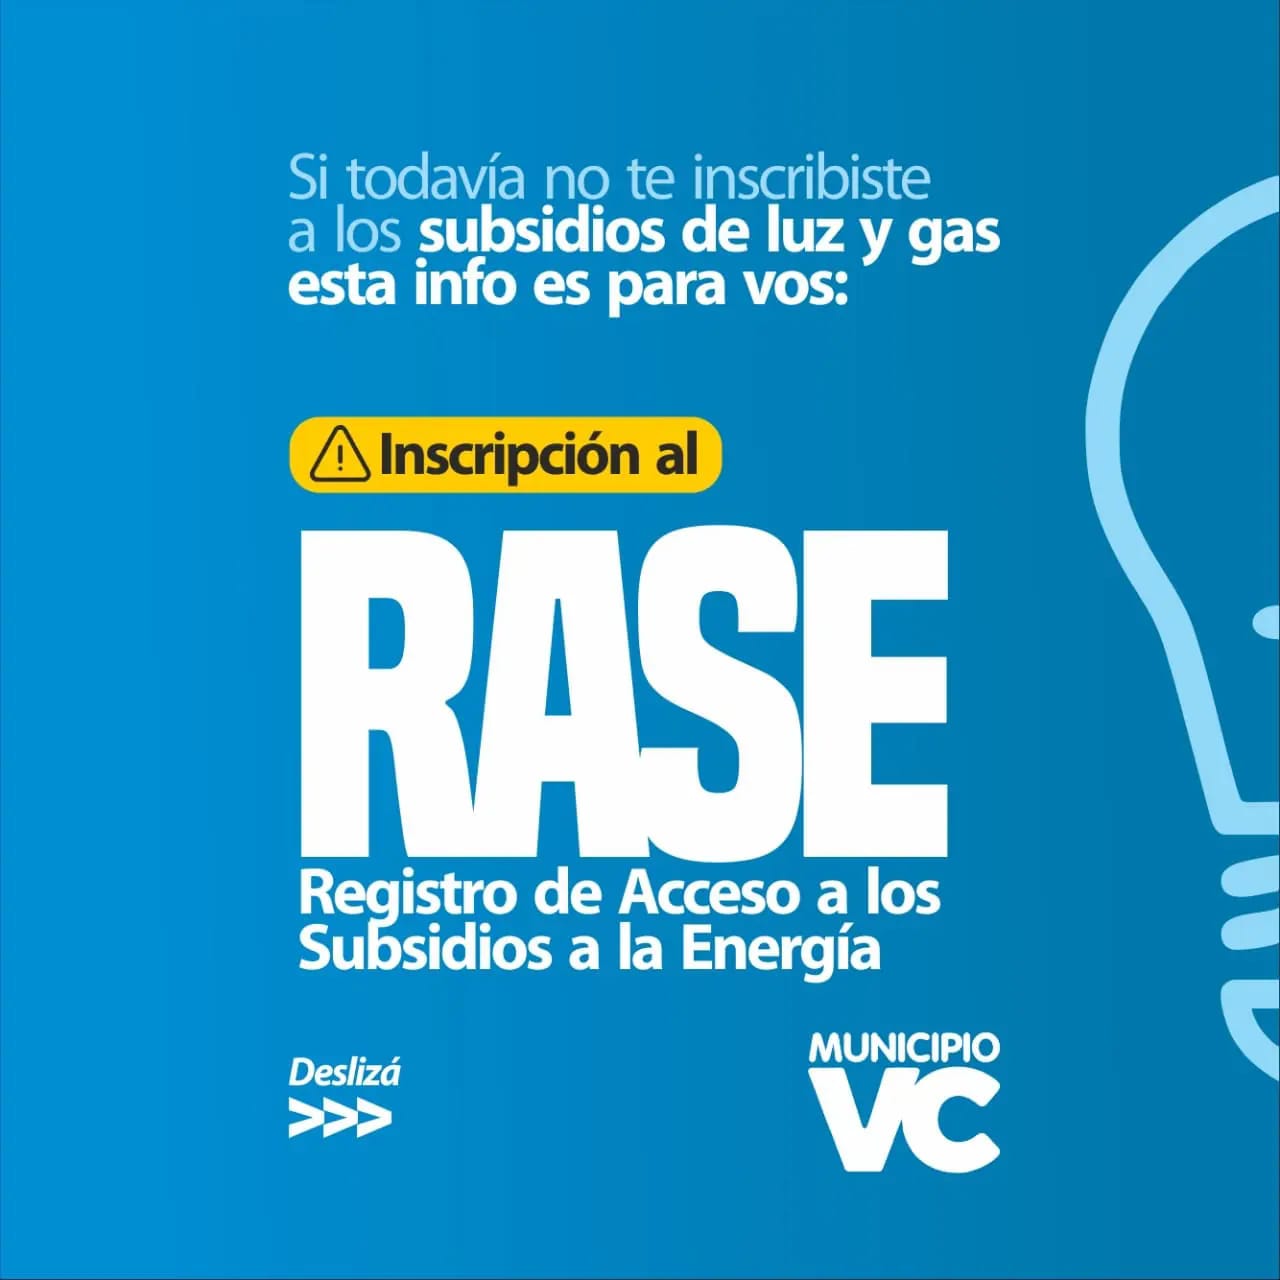 Inscripción al REGISTRO DE ACCESO A SUBSIDIOS DE ENERGÍA (RASE) DE LUZ Y GAS.